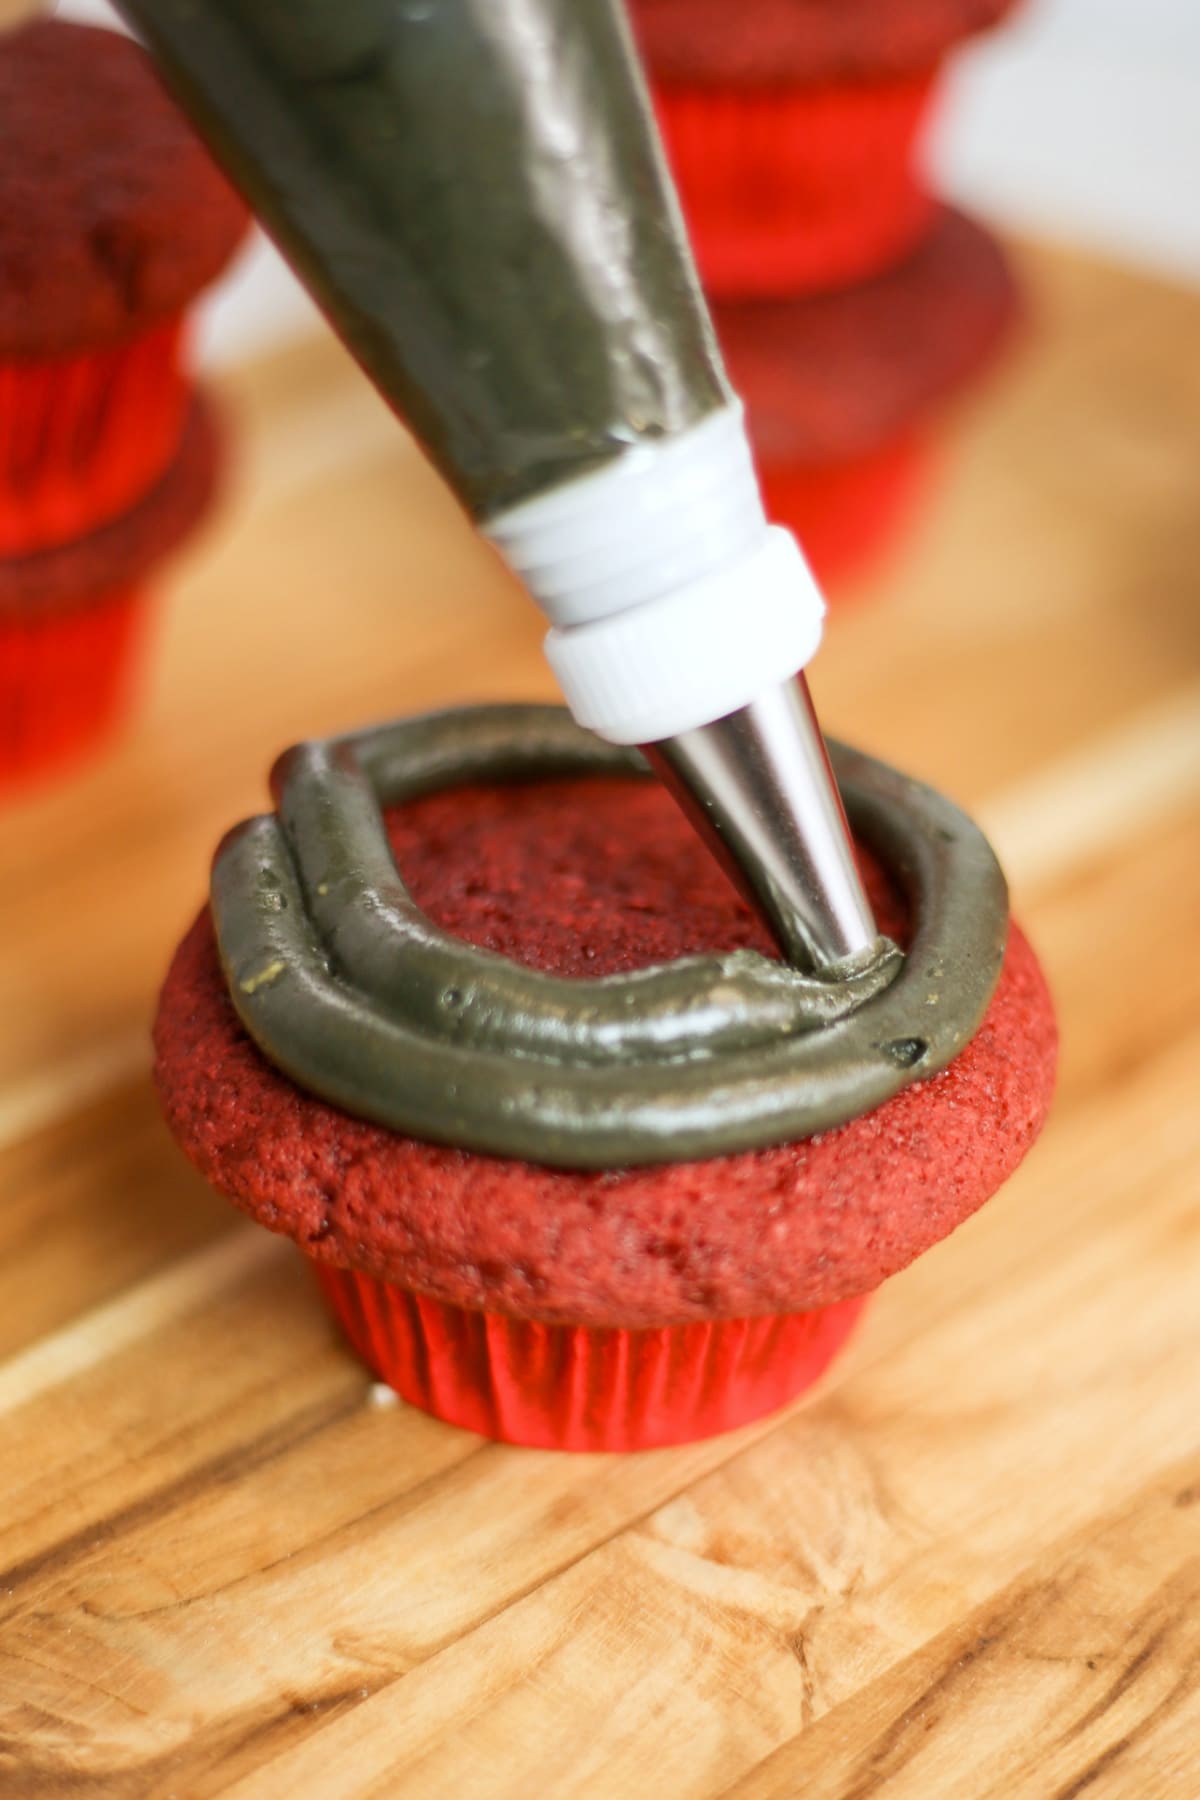 Black frosting on red velvet cupcake